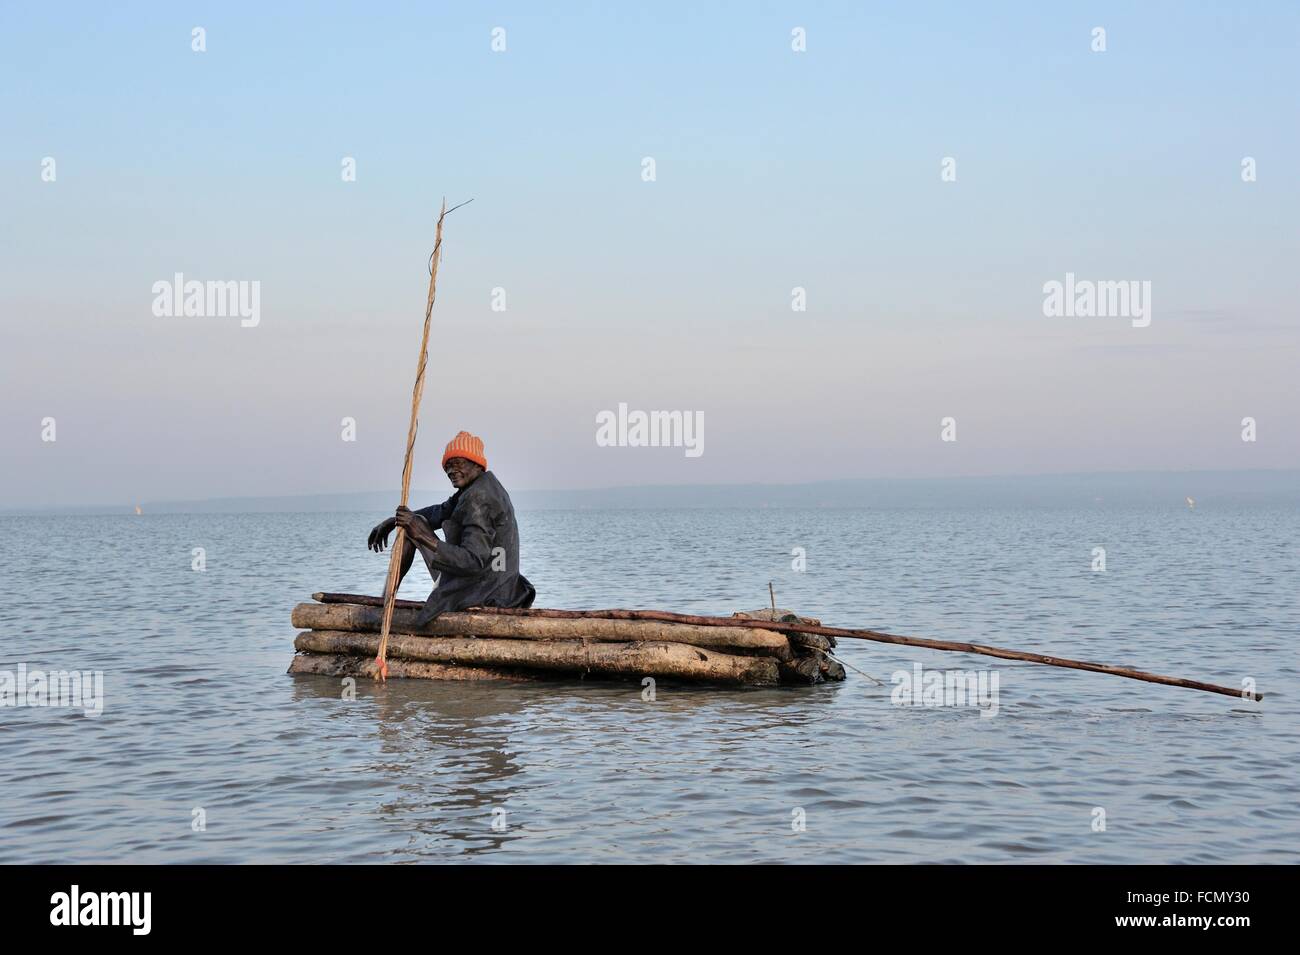 El viejo se basa y jura por el método tradicional, su viejo barco y caña de pescar, antiguo barco en el Lago Victoria, en Kenia. Foto de stock